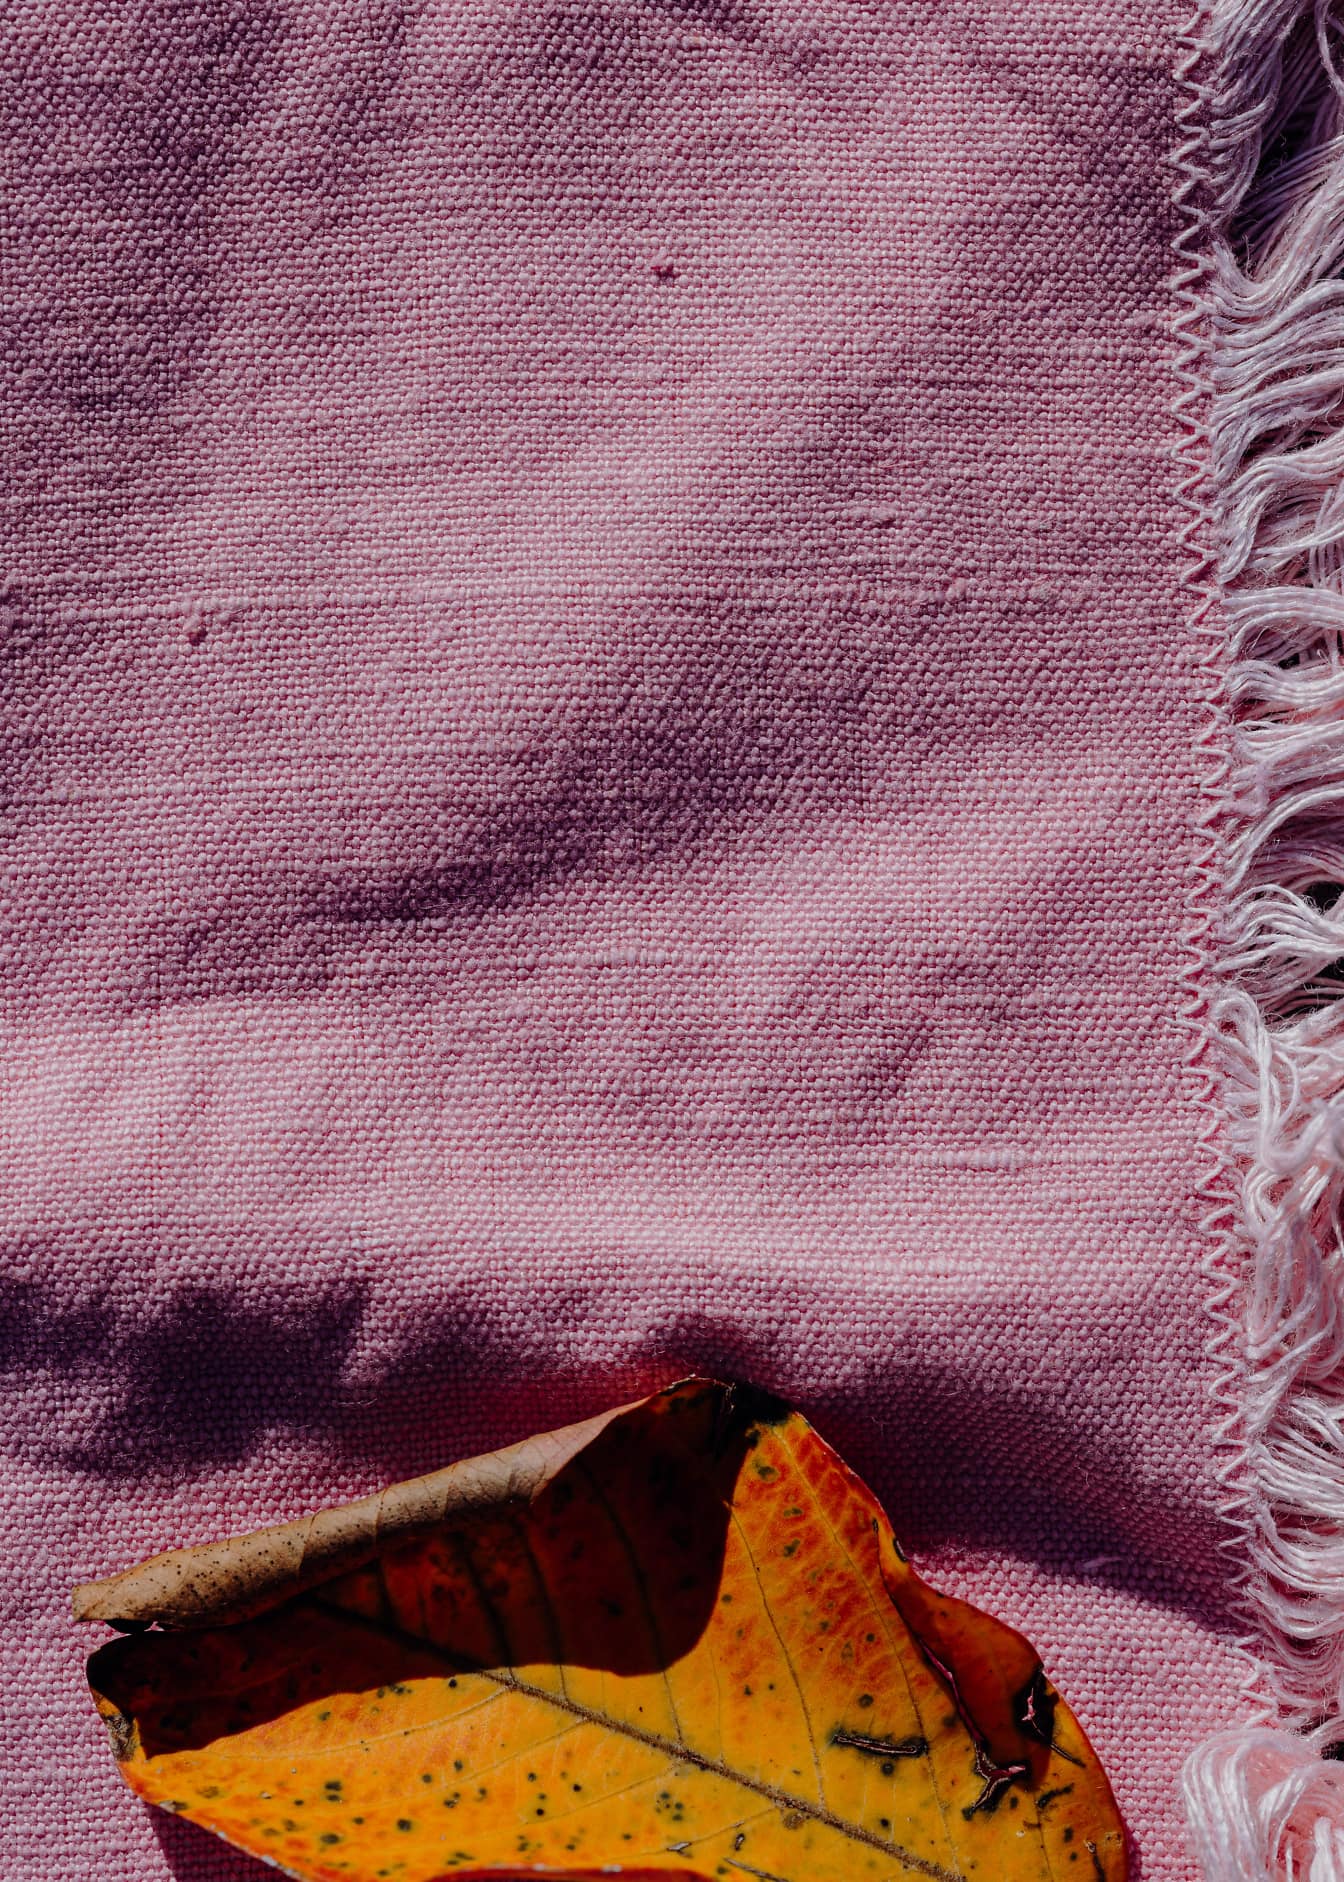 Textura de lienzo rosado hecho a mano con hoja seca de color amarillo anaranjado